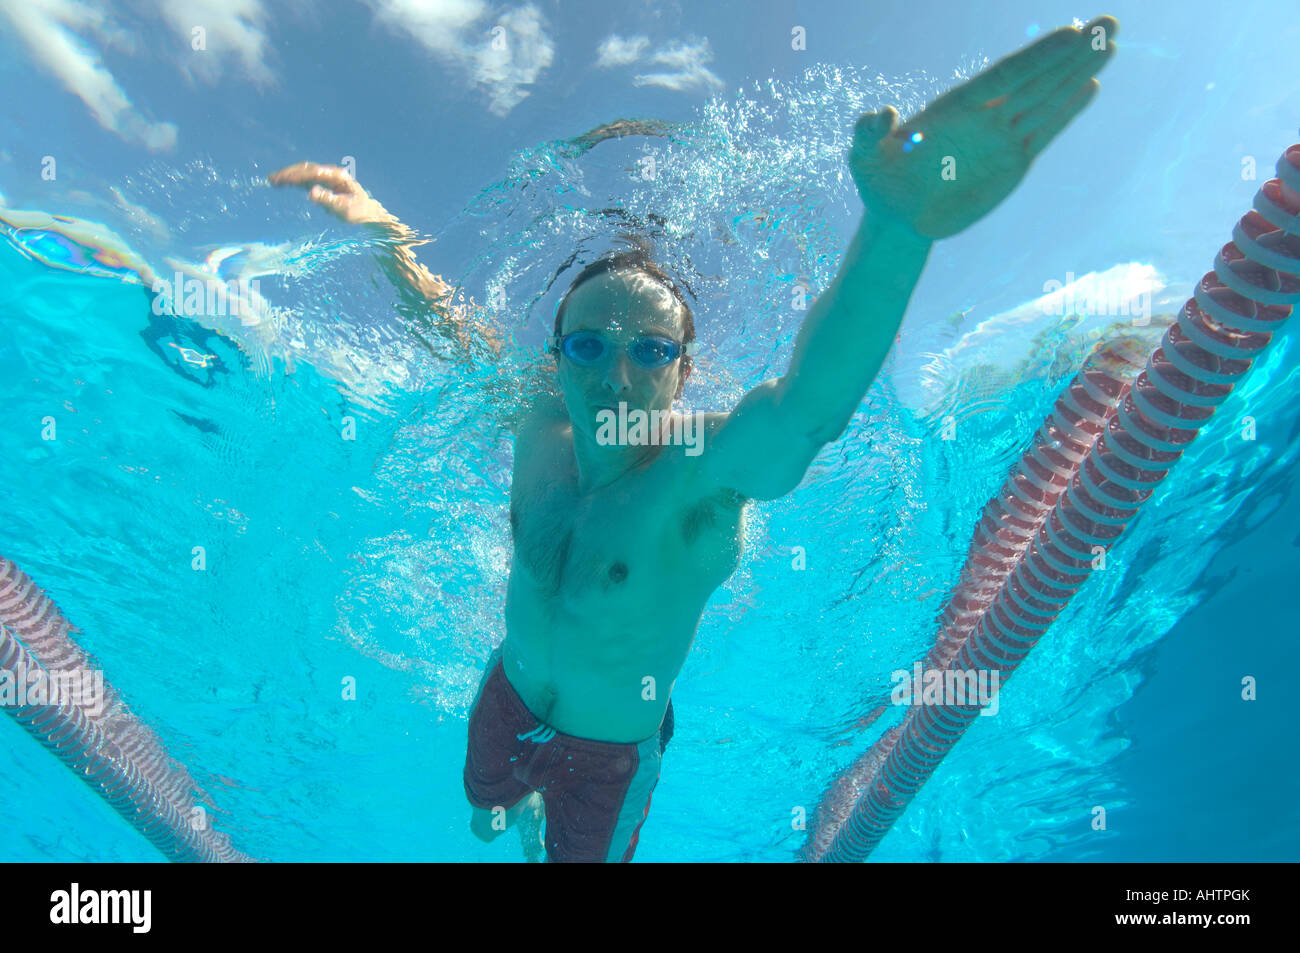 man swimming in pool Stock Photo